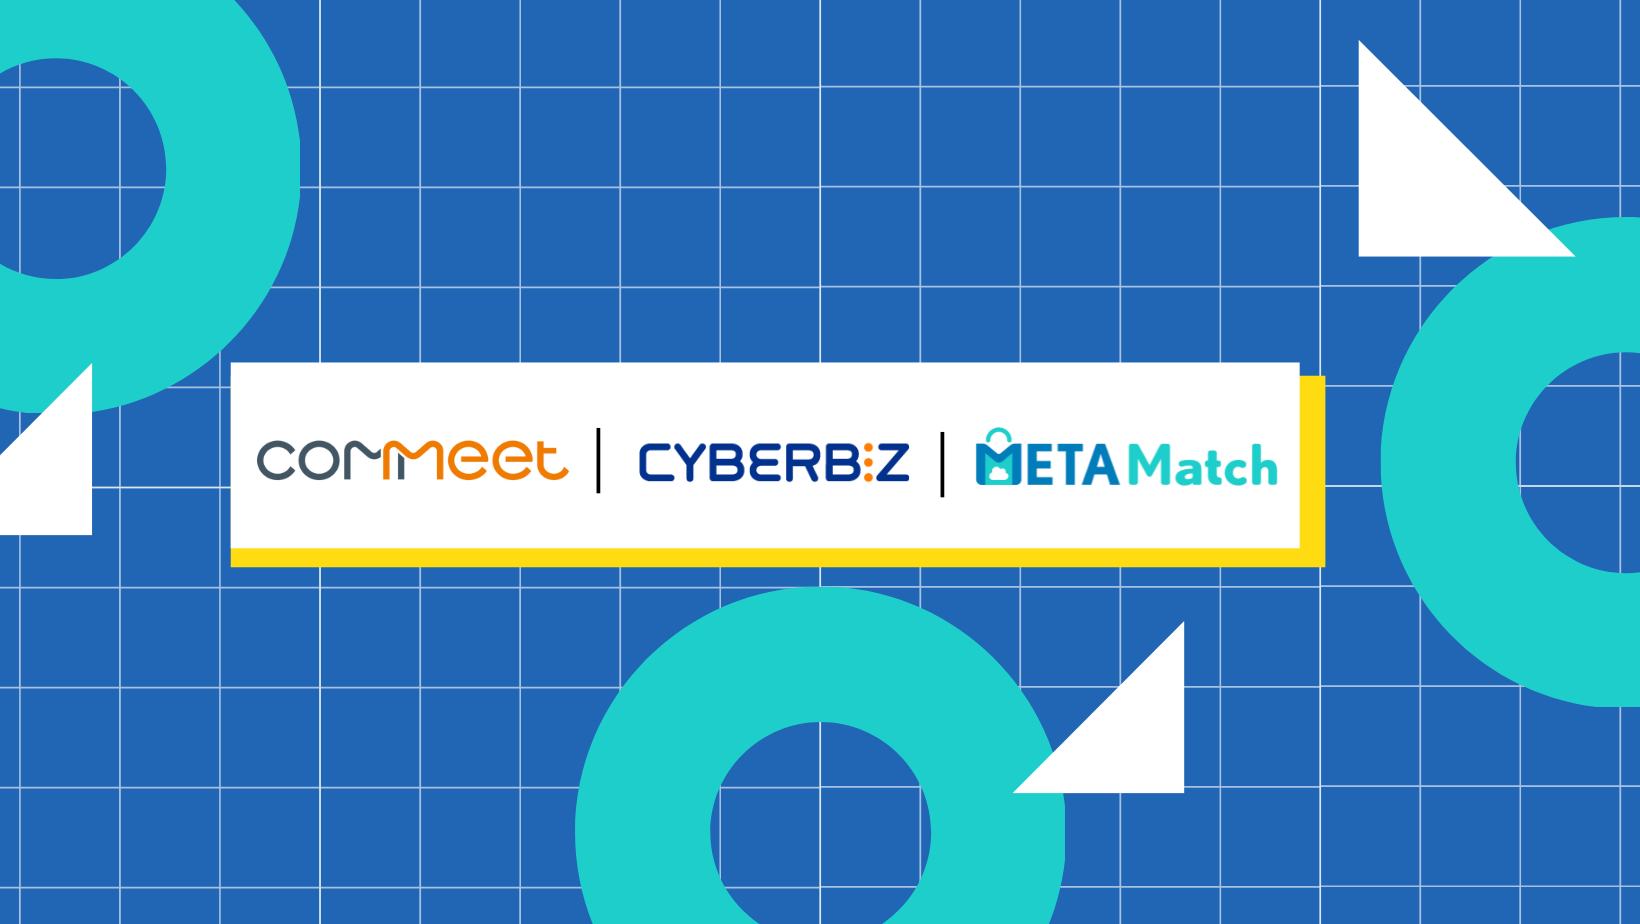 METAMatch 串連 COMMEET 與 CYBERBIZ，發揮數位工具的力量